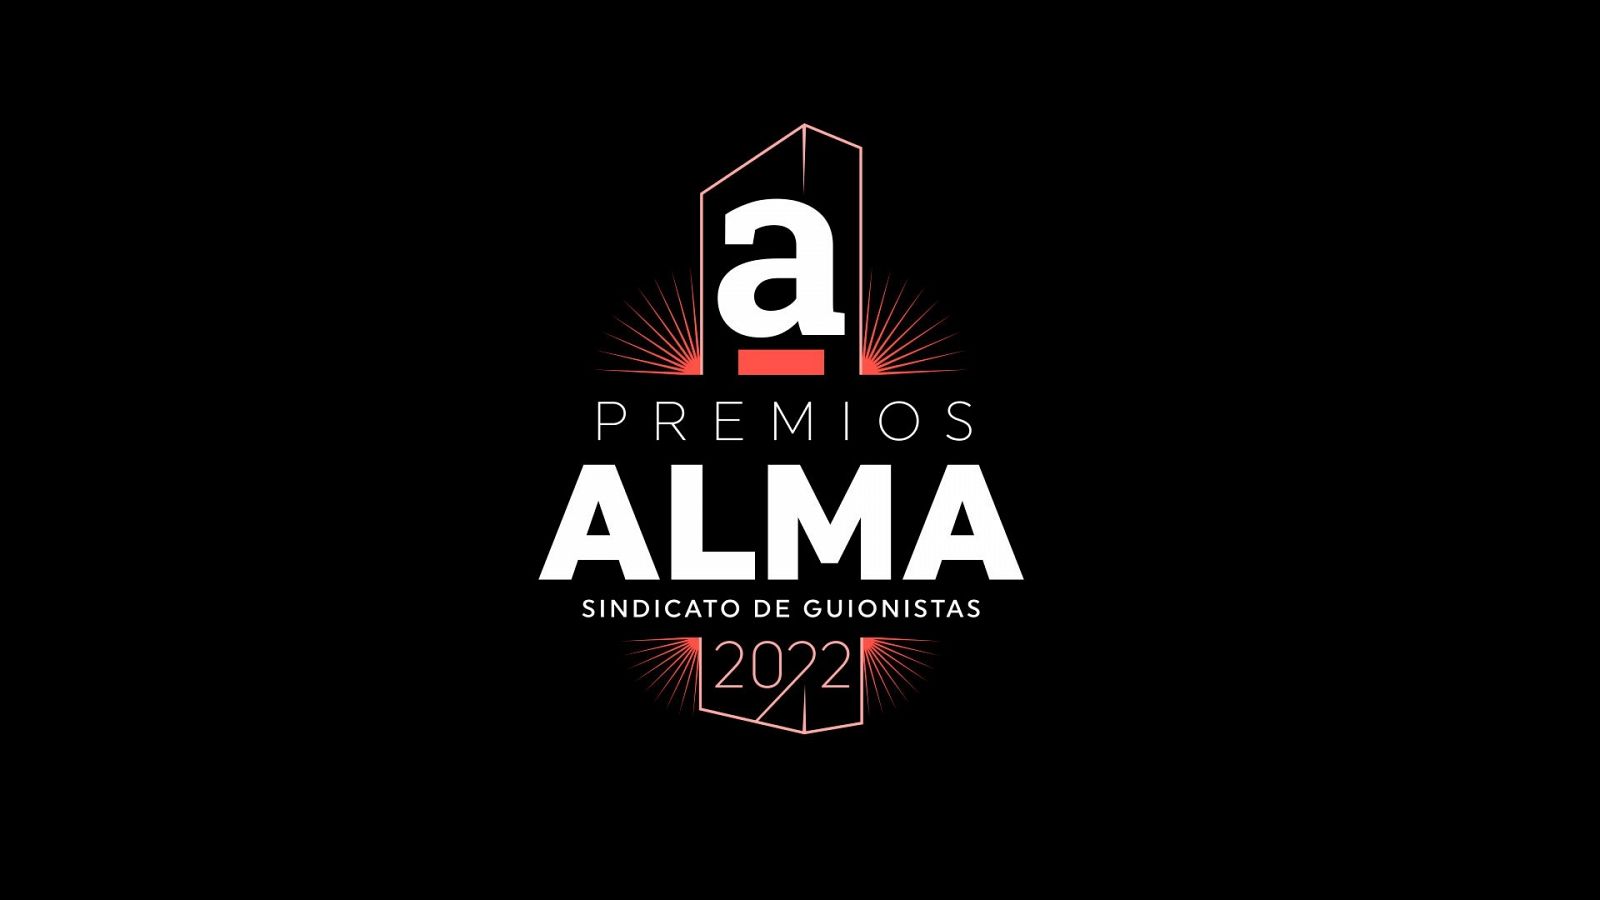  Premios ALMA de guion 2022